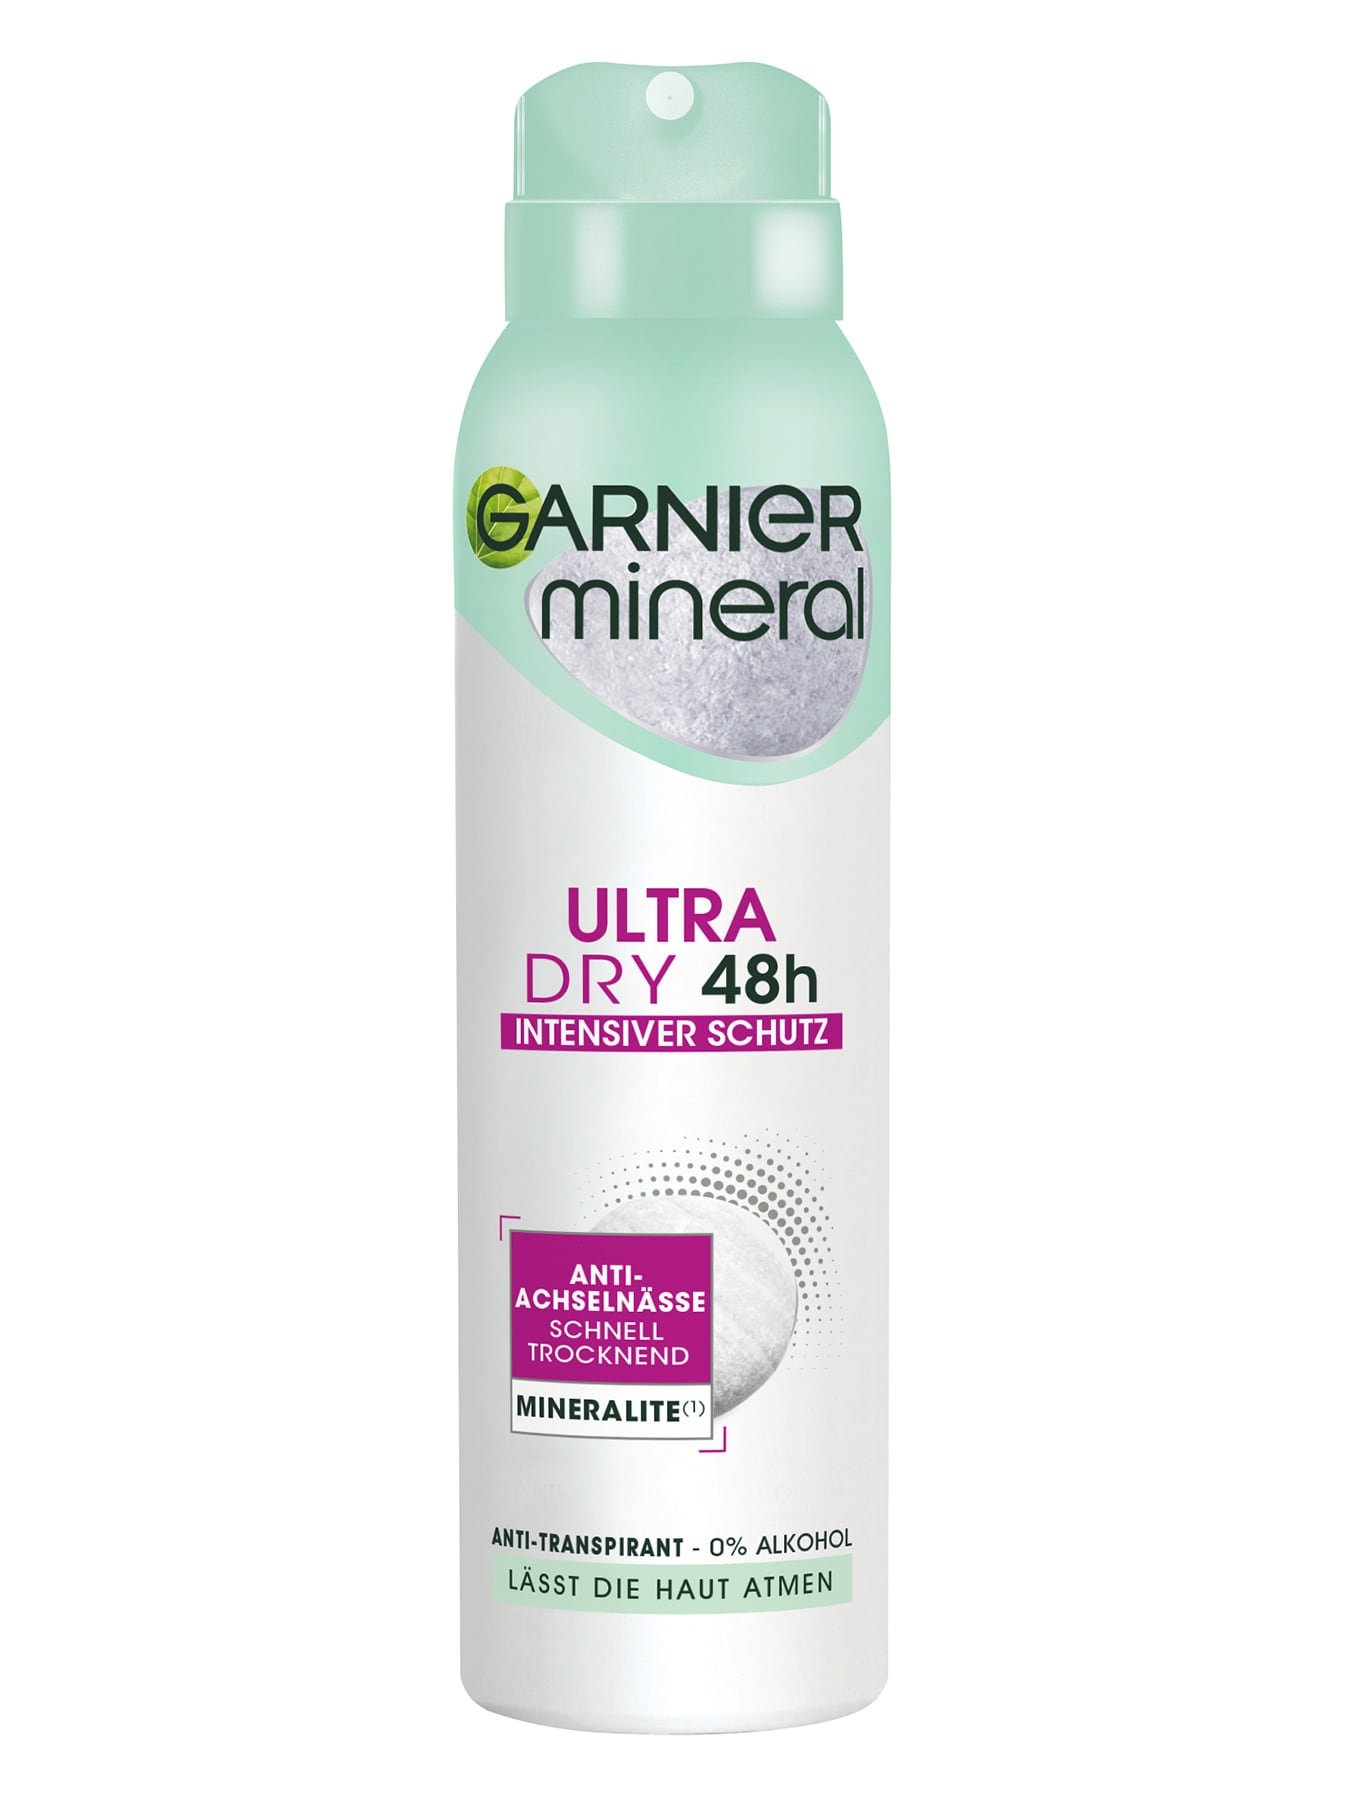 Mineral UltraDry Spray Anti-Transpirant Produktbild